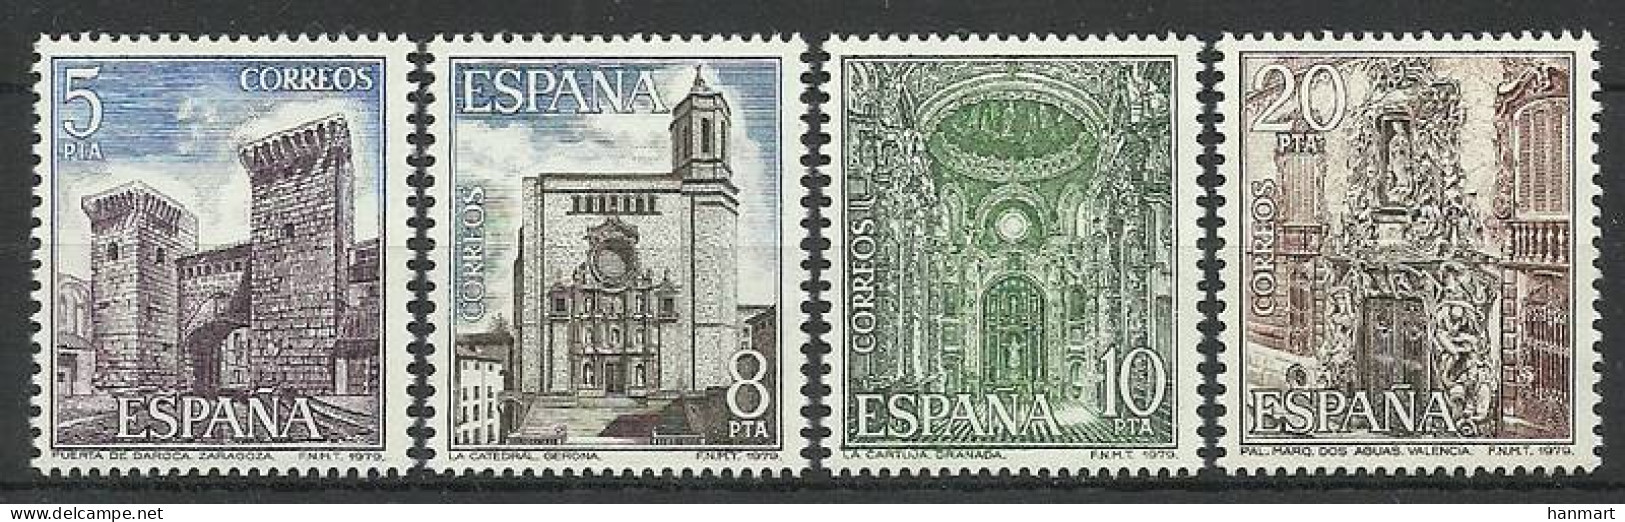 Spain 1979 Mi 2419-2422 MNH  (ZE1 SPN2419-2422) - Beeldhouwkunst